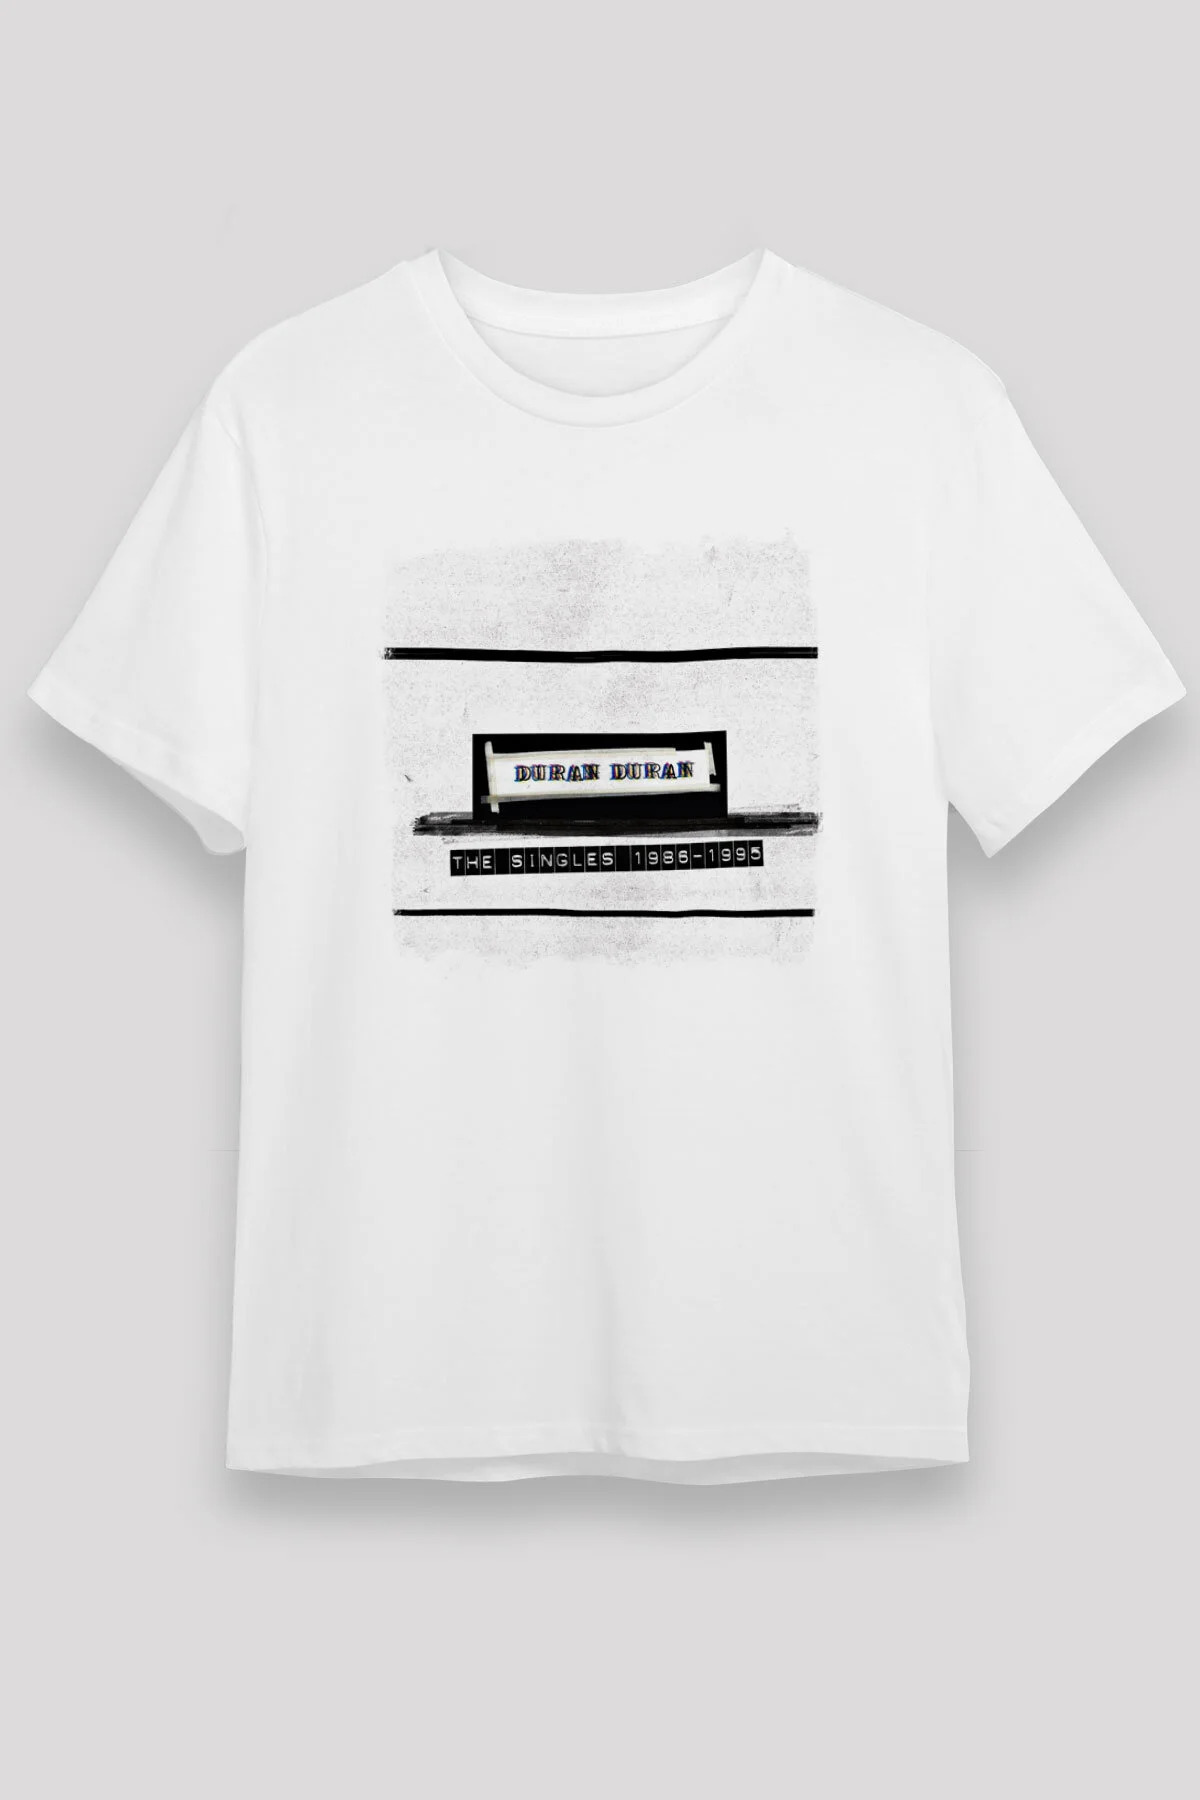 Duran Duran  T shirt , Music Band ,Unisex Tshirt  13